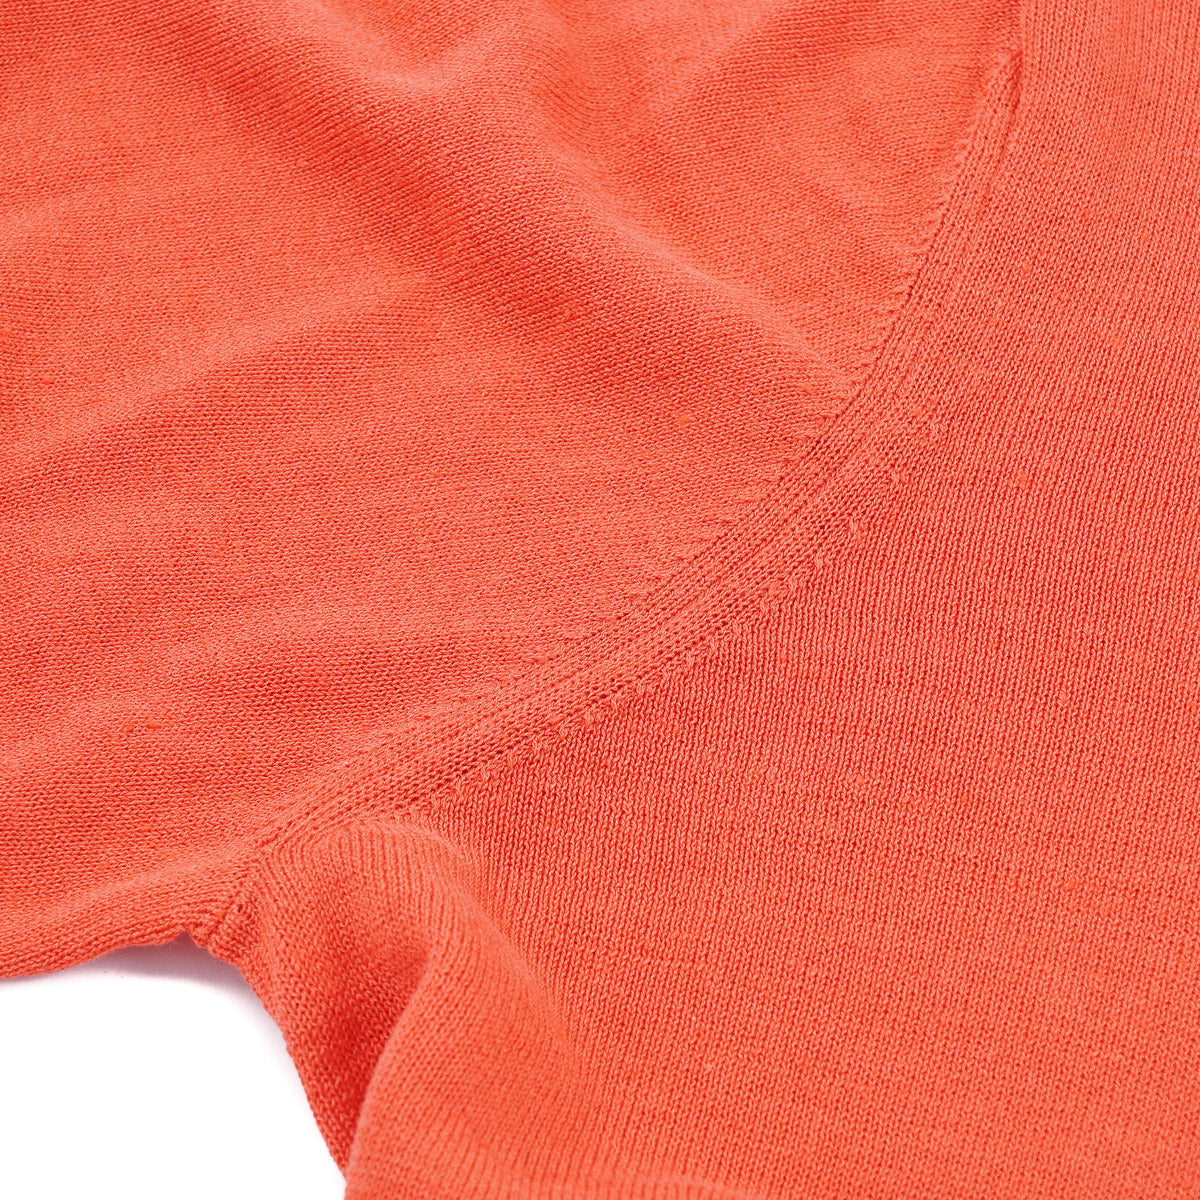 Peserico Lightweight Linen-Cotton Sweater - Top Shelf Apparel